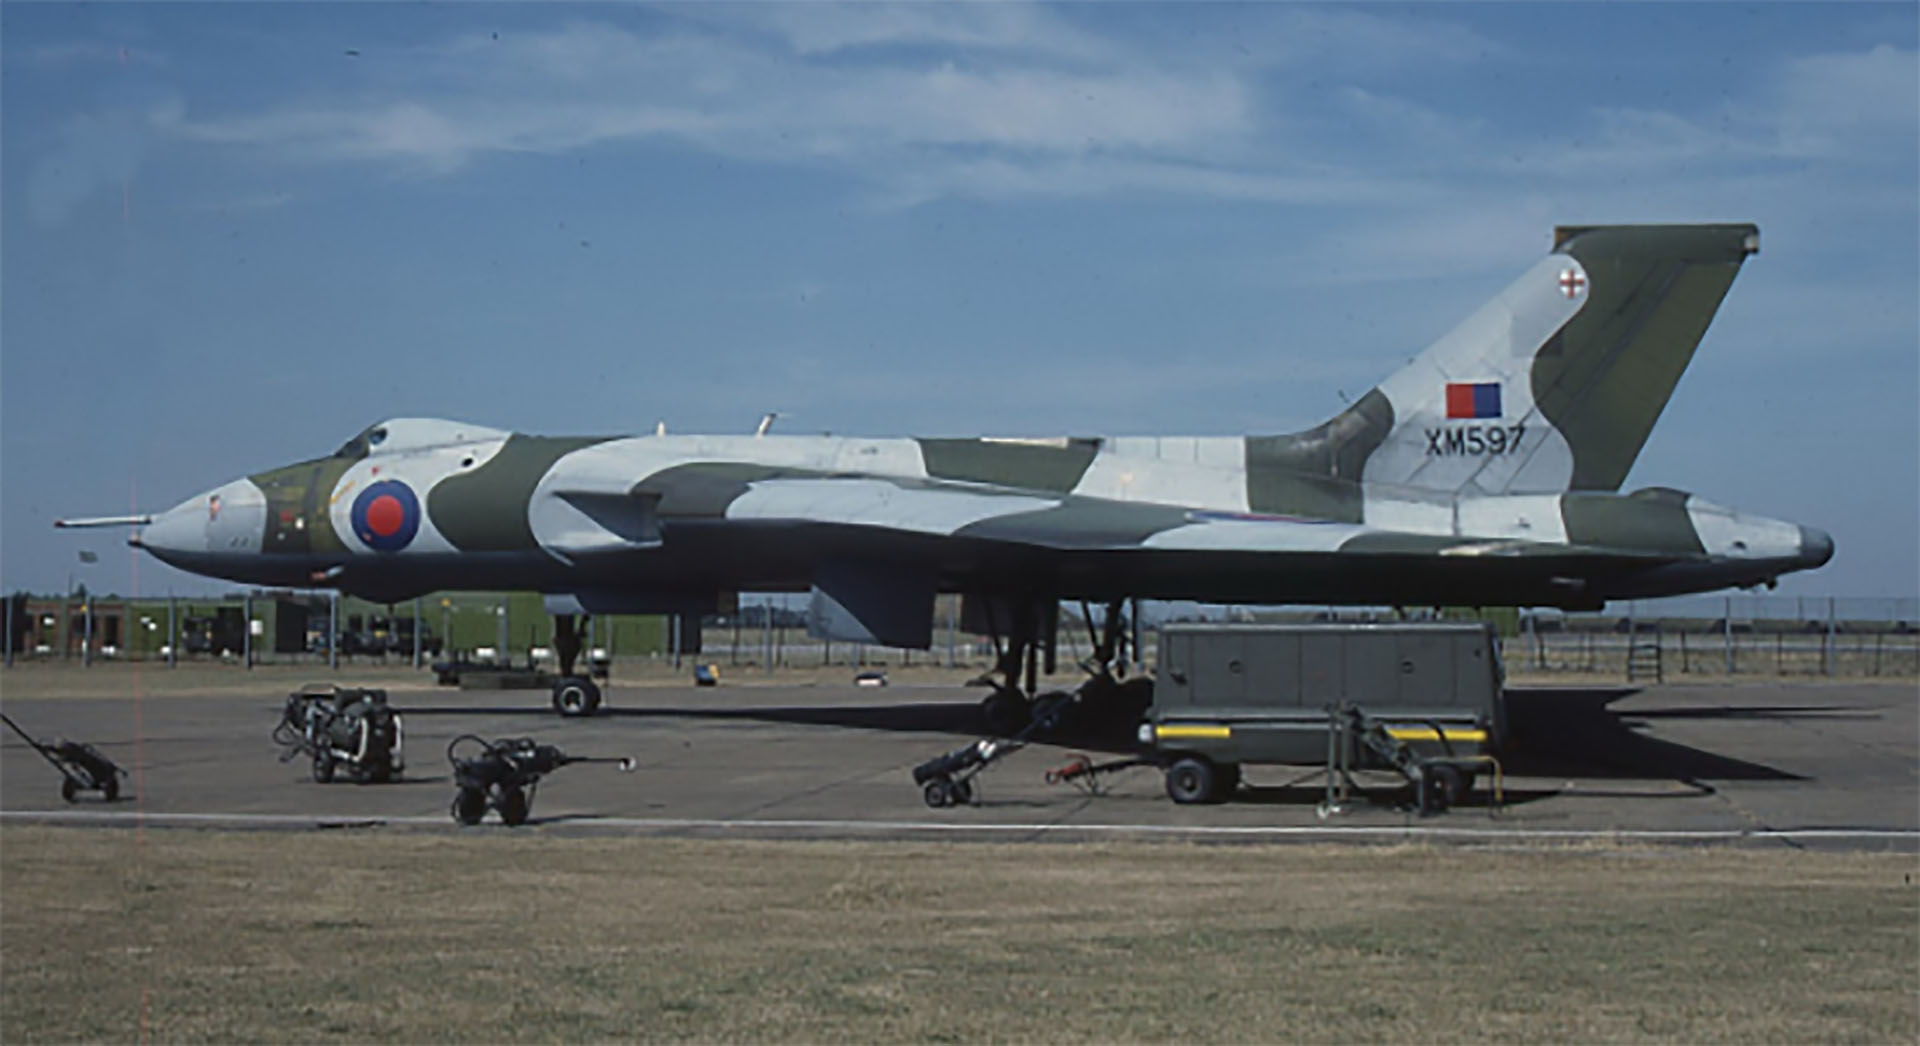 Avión Avro Vulcan B.2 utilizado por la Real Fuerza Aérea para cumplir operaciones en el Atlántico Sur. Esta aeronave, matrícula XM597, cumplió misiones sobre Malvinas con misiles antirradar Shrike norteamericanos